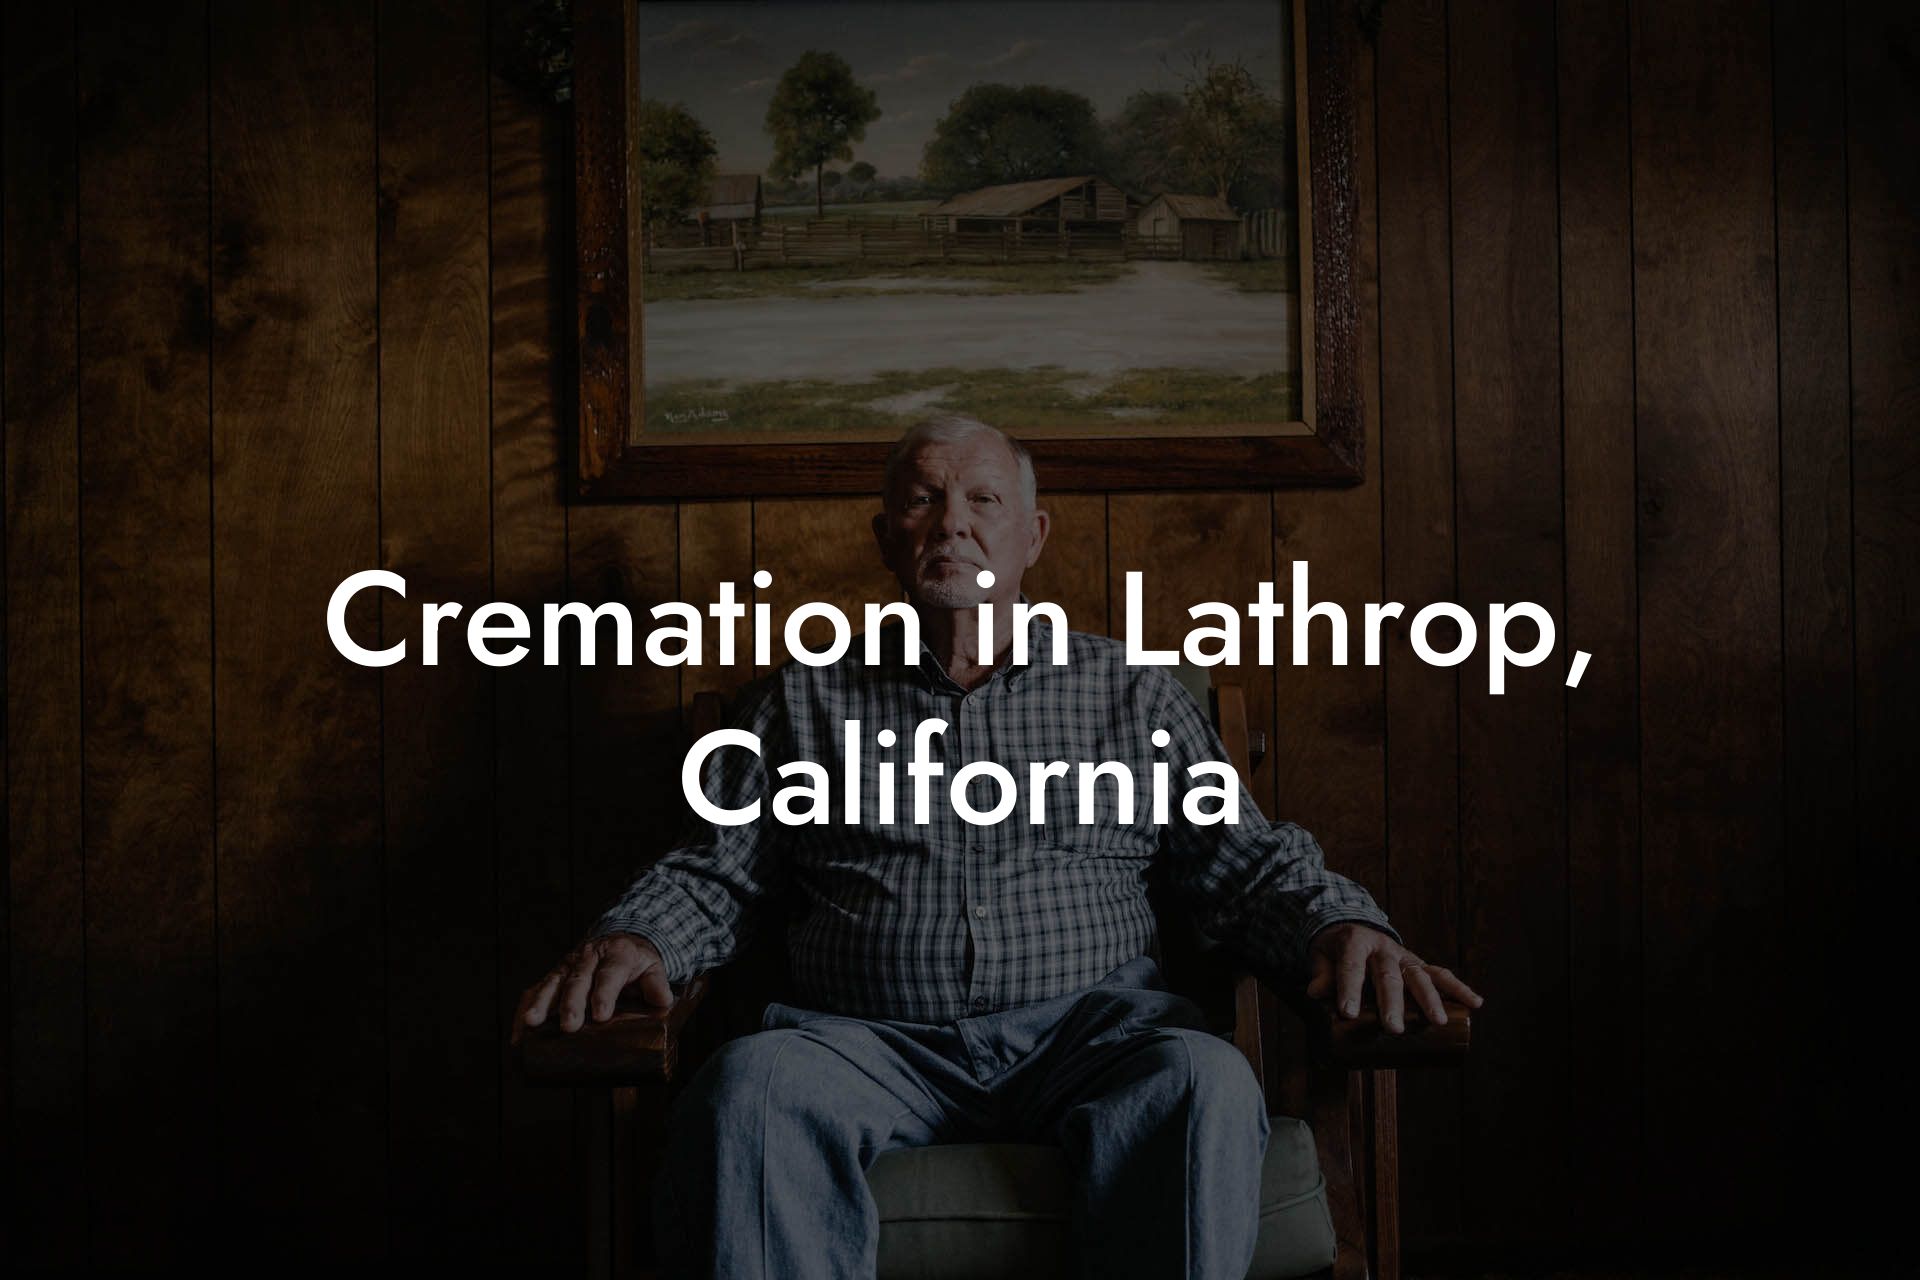 Cremation in Lathrop, California